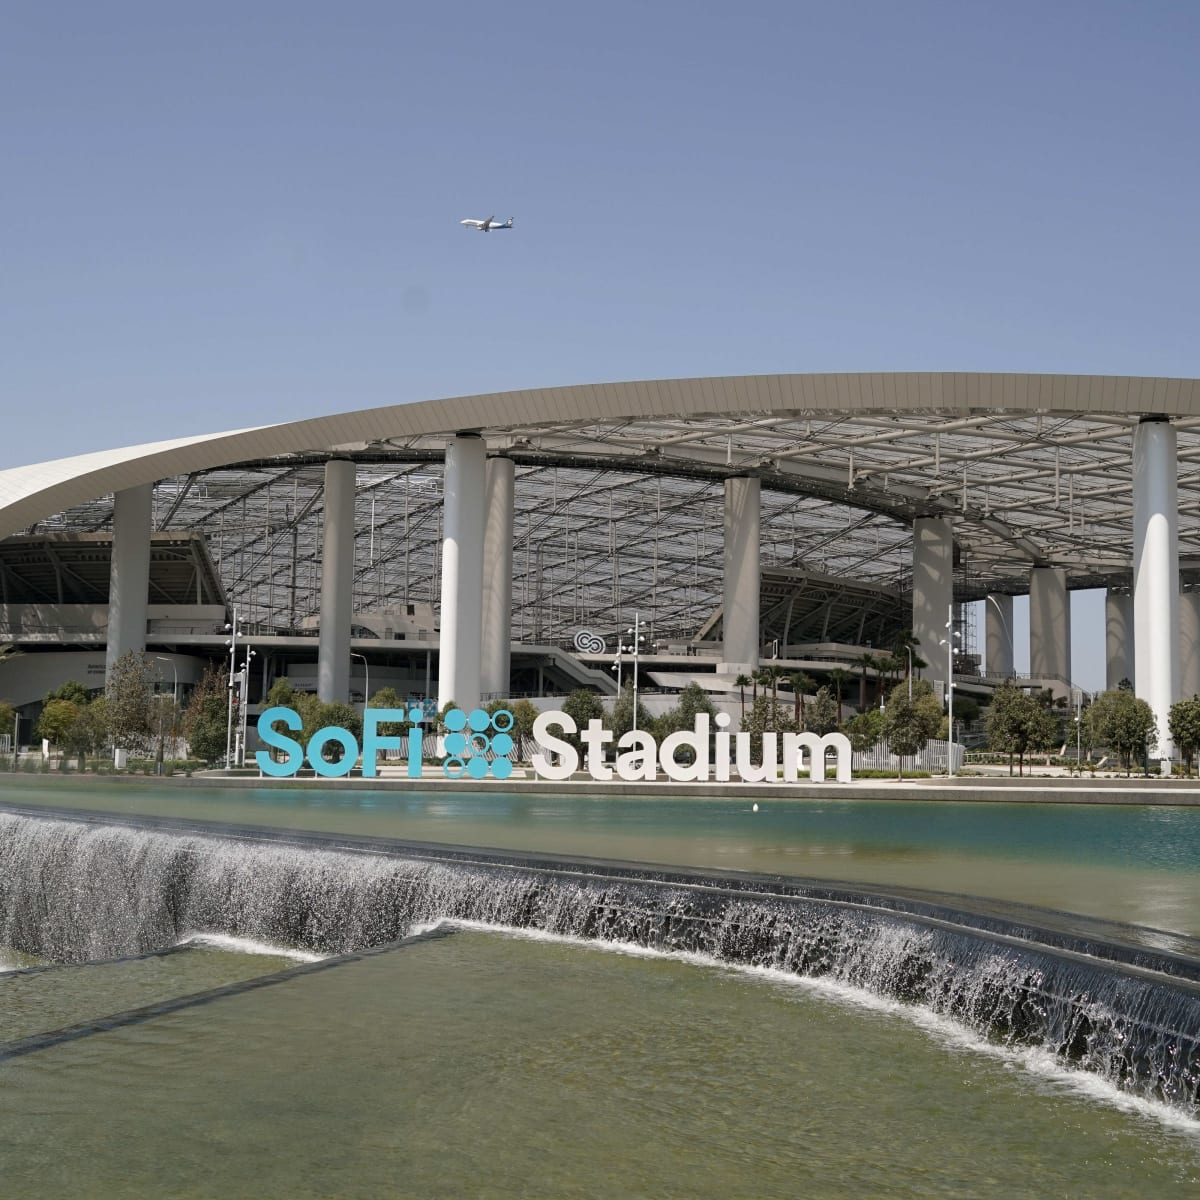 SoFi Stadium: $5 billion stadium to open Sunday in NFL Week 1